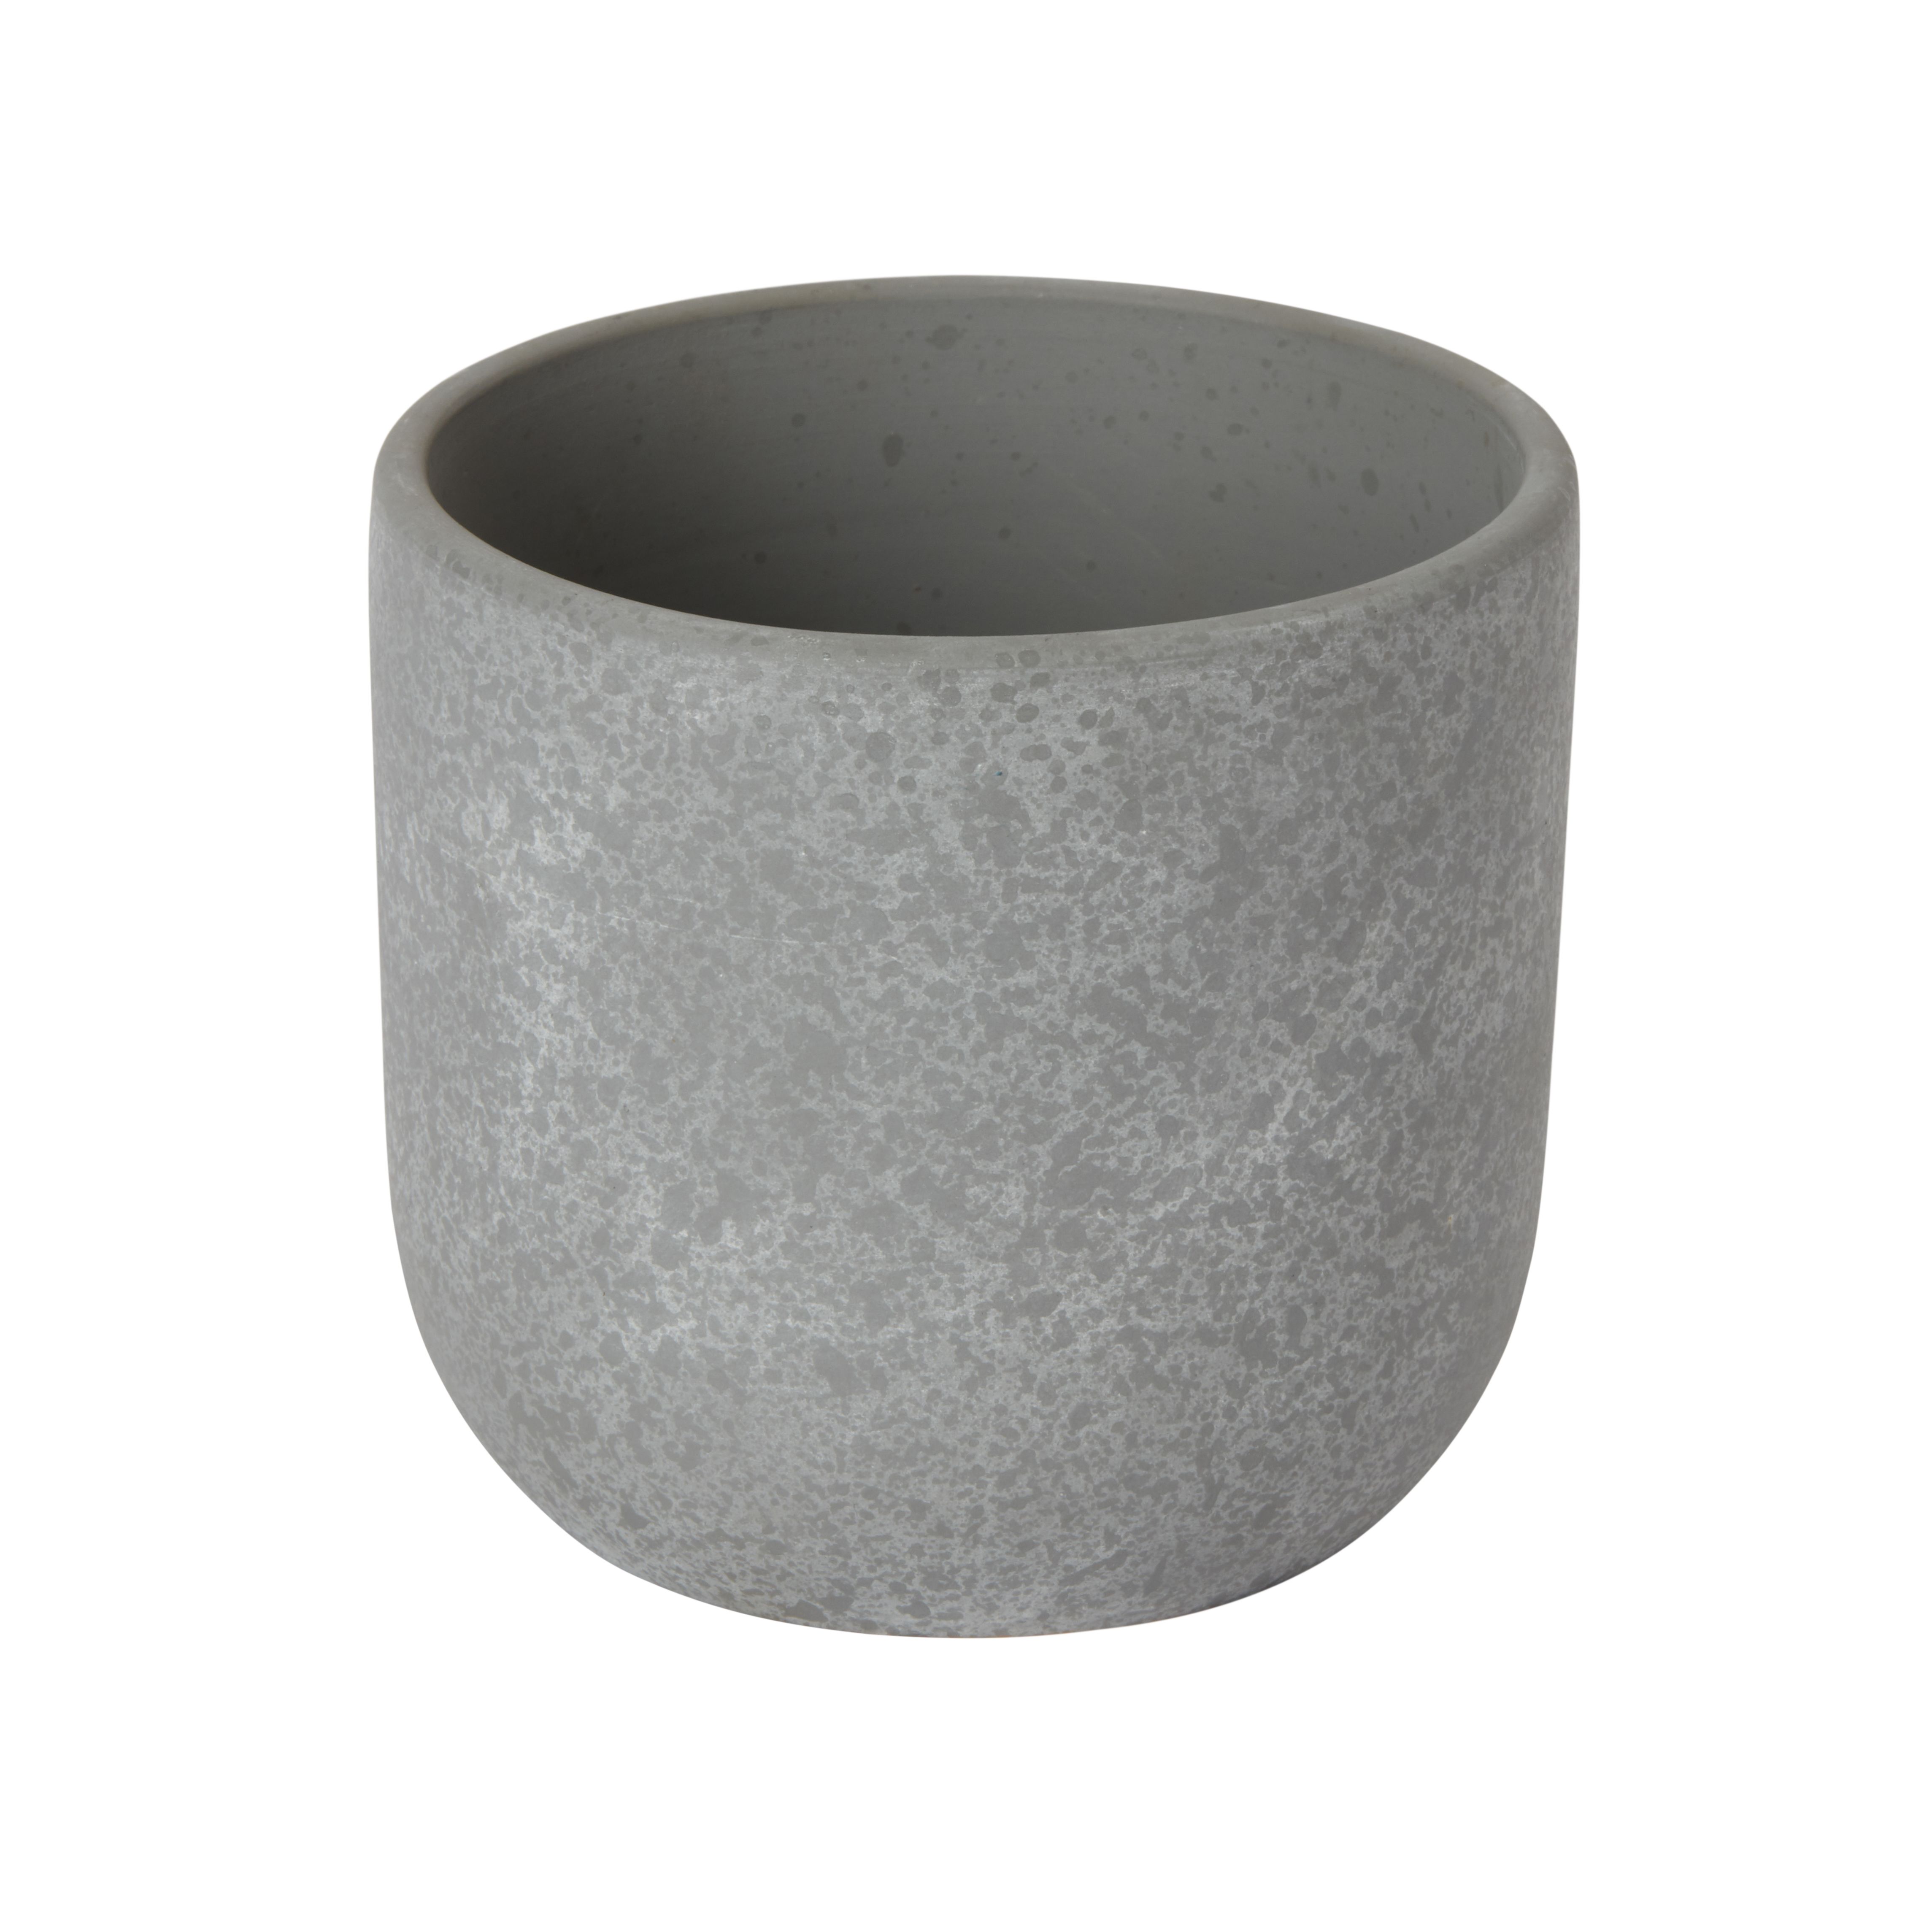 at B&Q Plant pot Speckle Grey Clay Circular | DIY (Dia)10.4cm